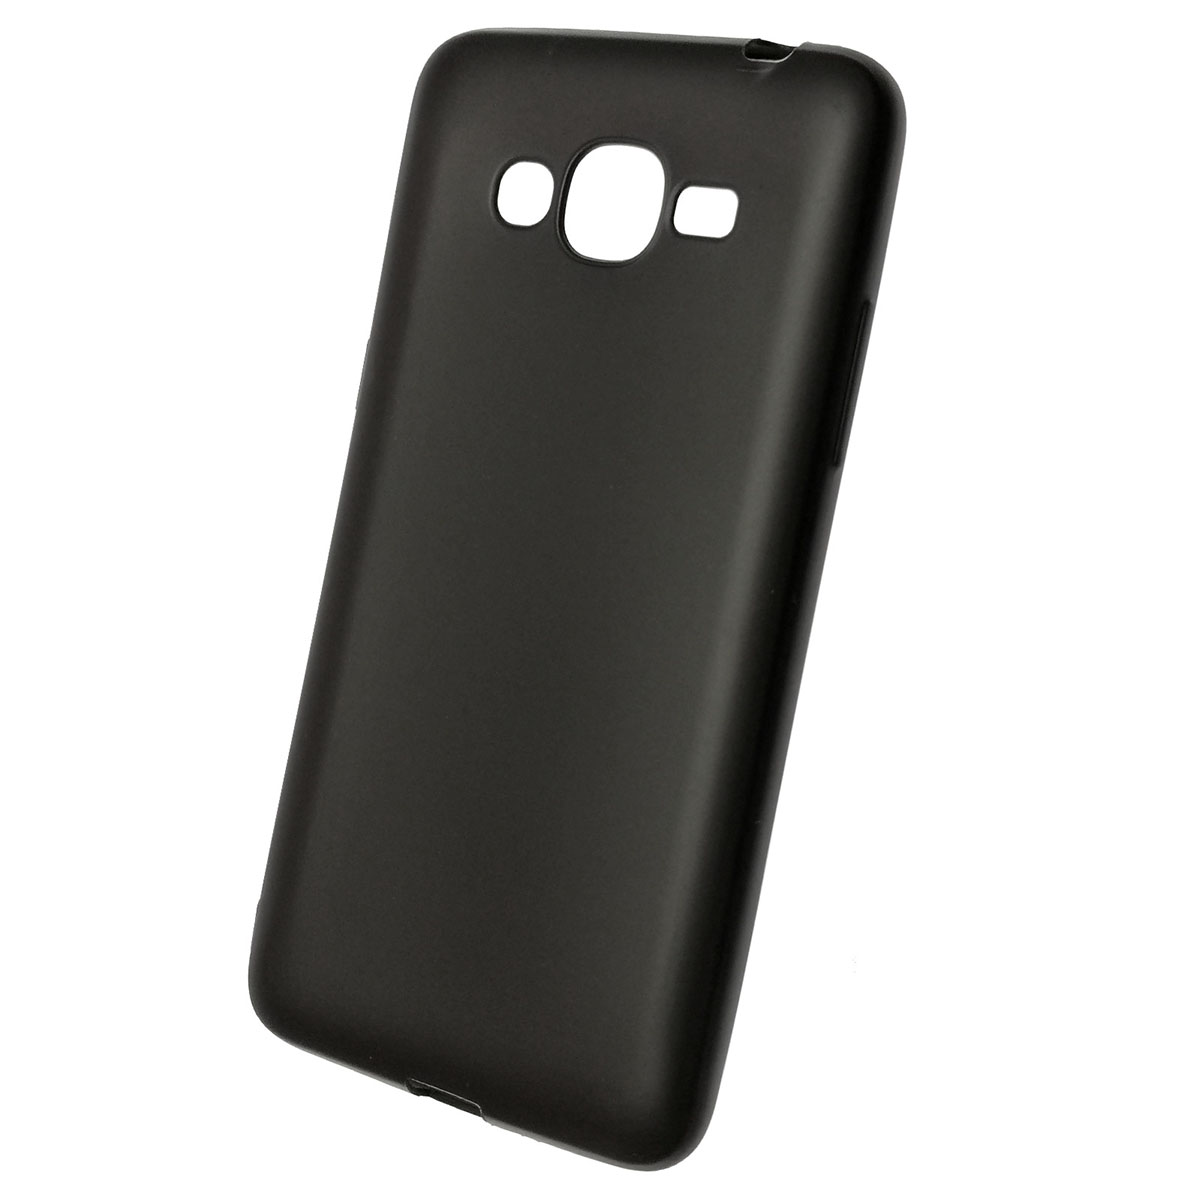 Чехол накладка для SAMSUNG Galaxy J2 Prime (SM-G532), силикон, матовый, цвет черный.